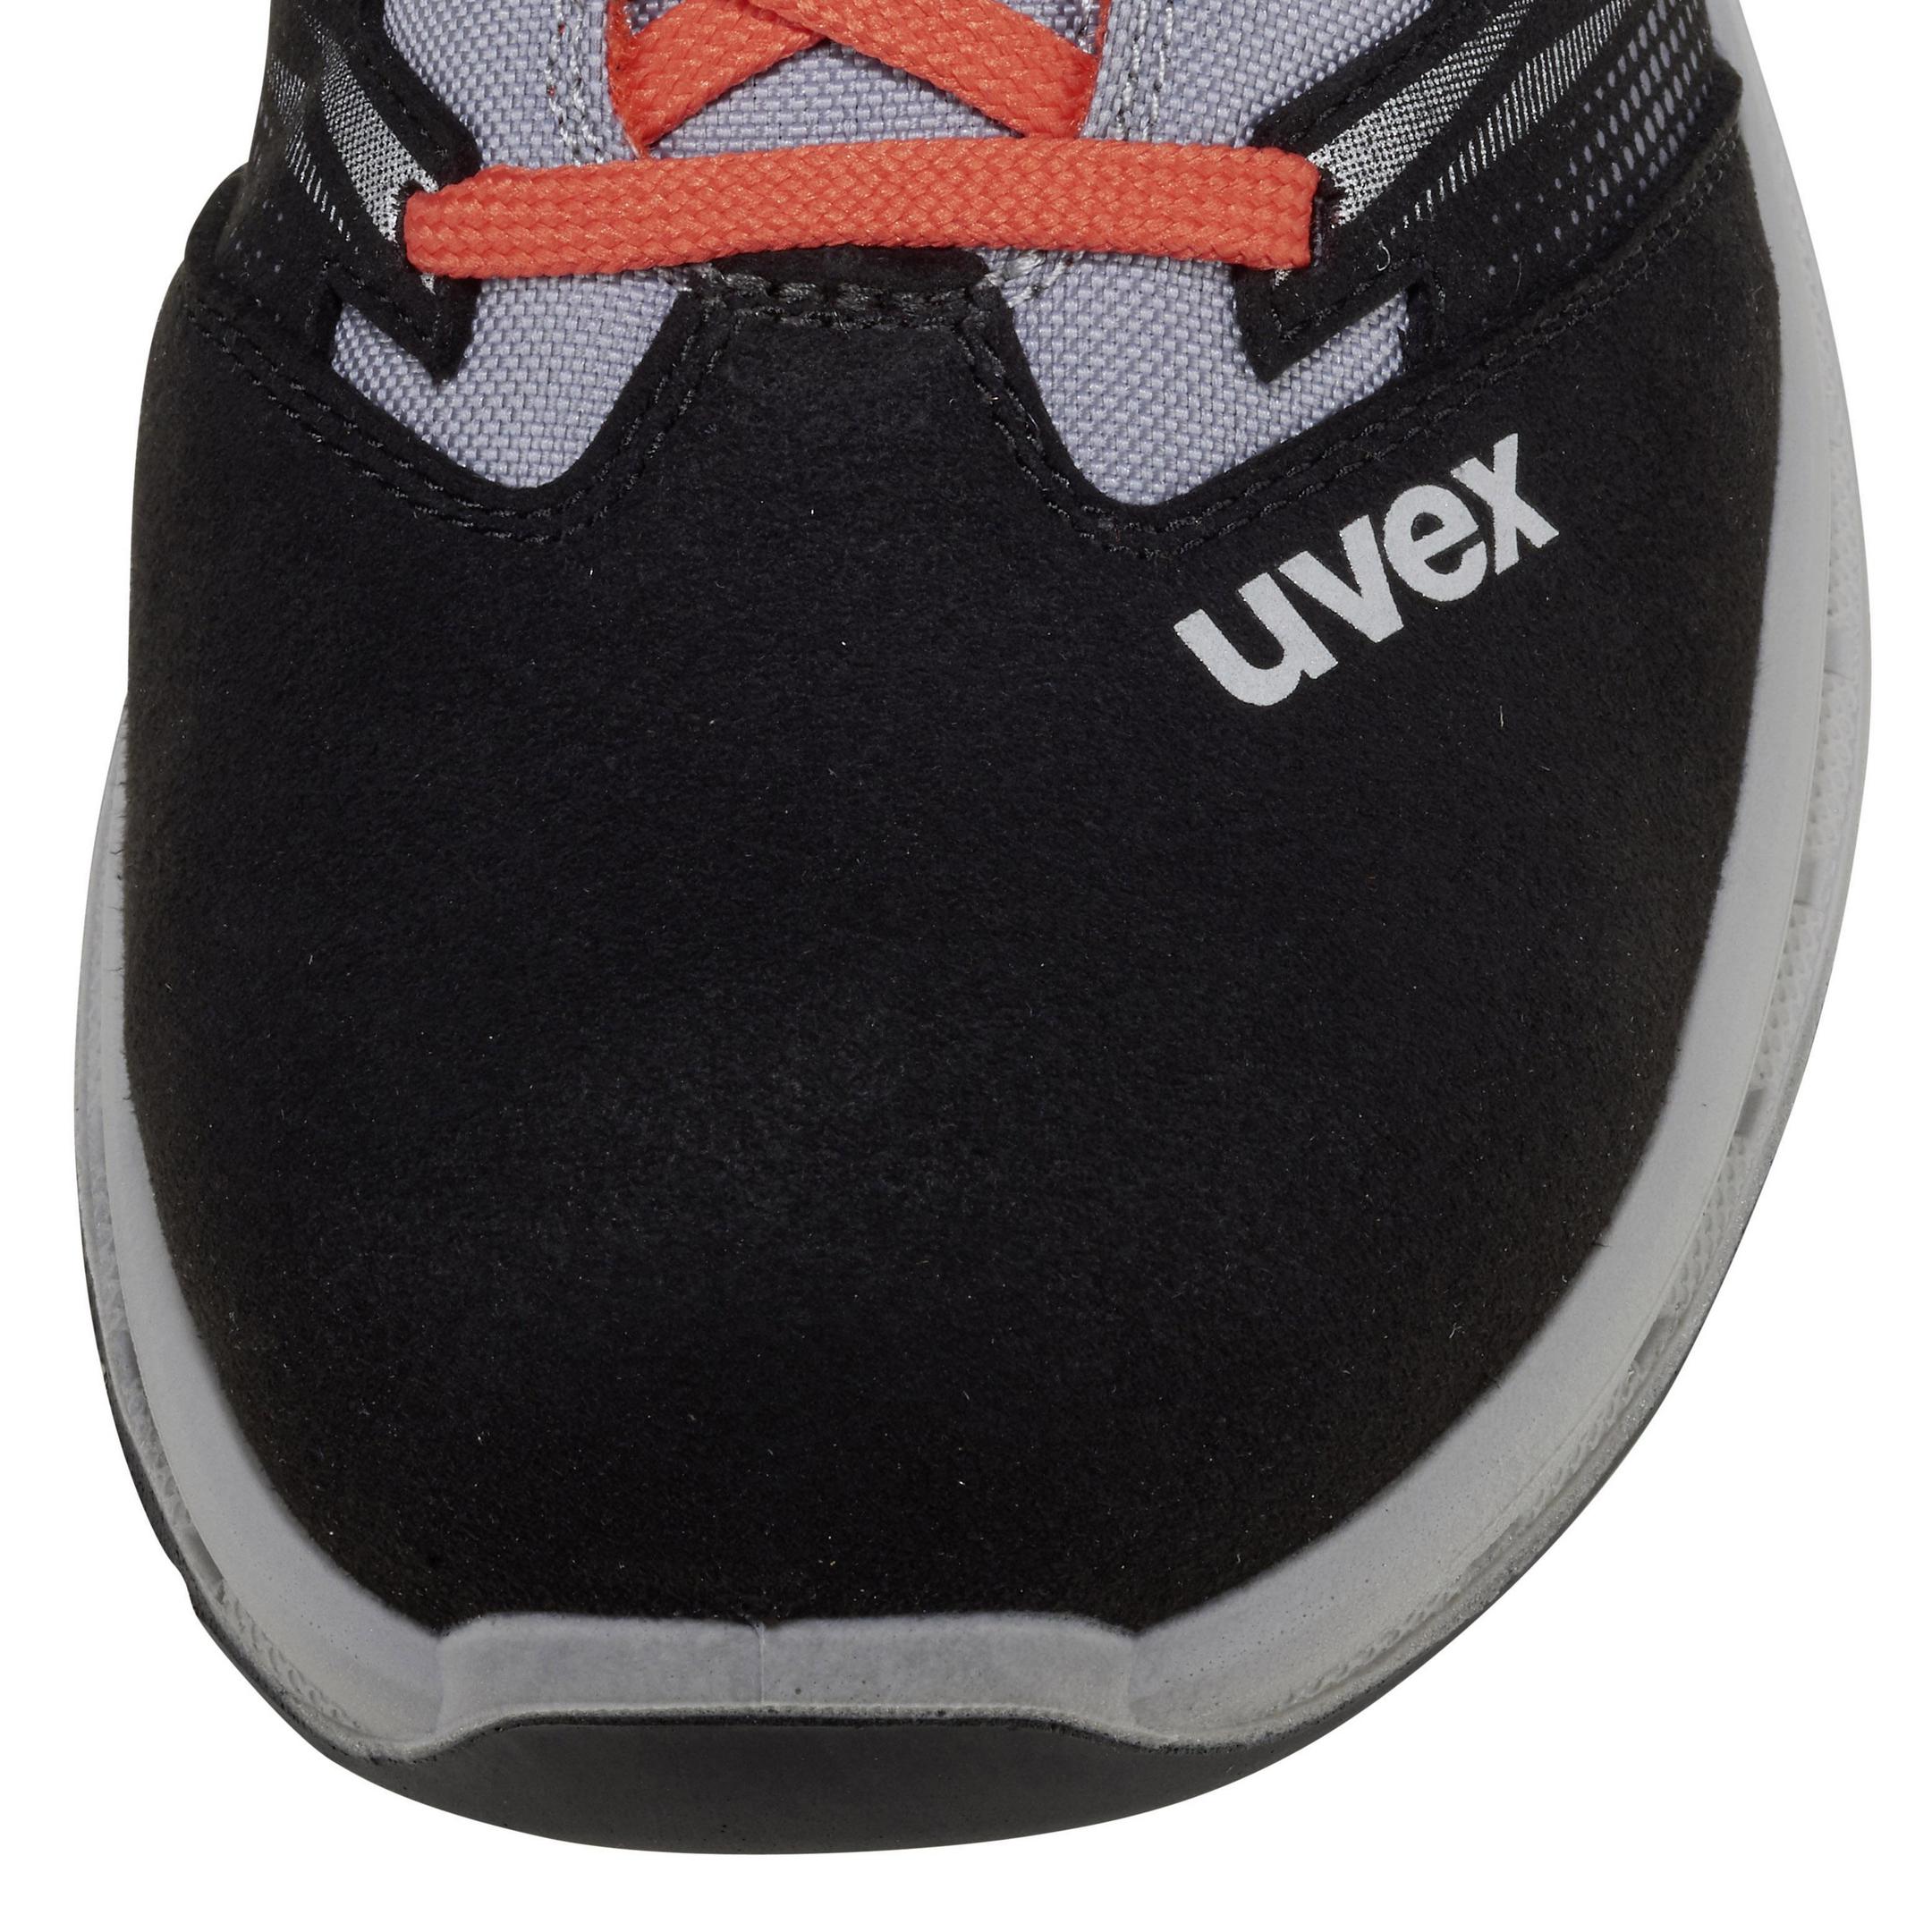 uvex 2 trend Sicherheitsschuh S2 Halbschuh- Sicherheitshalbschuh mit breiter Passform